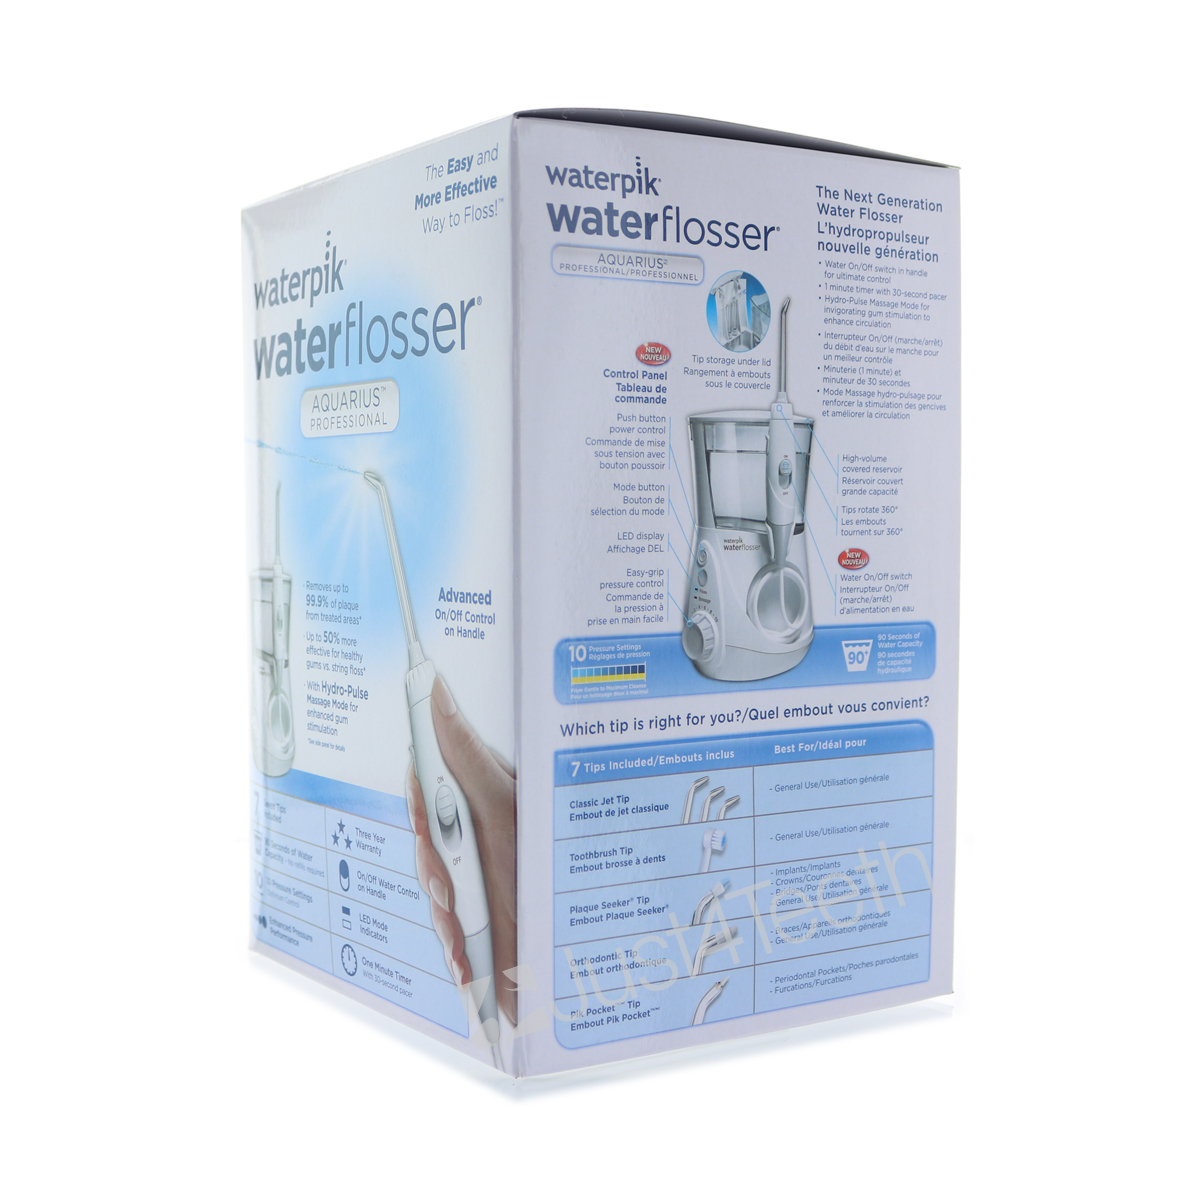 Waterpik WP 660 Aquarius Professional Water Flosser 110v US Version